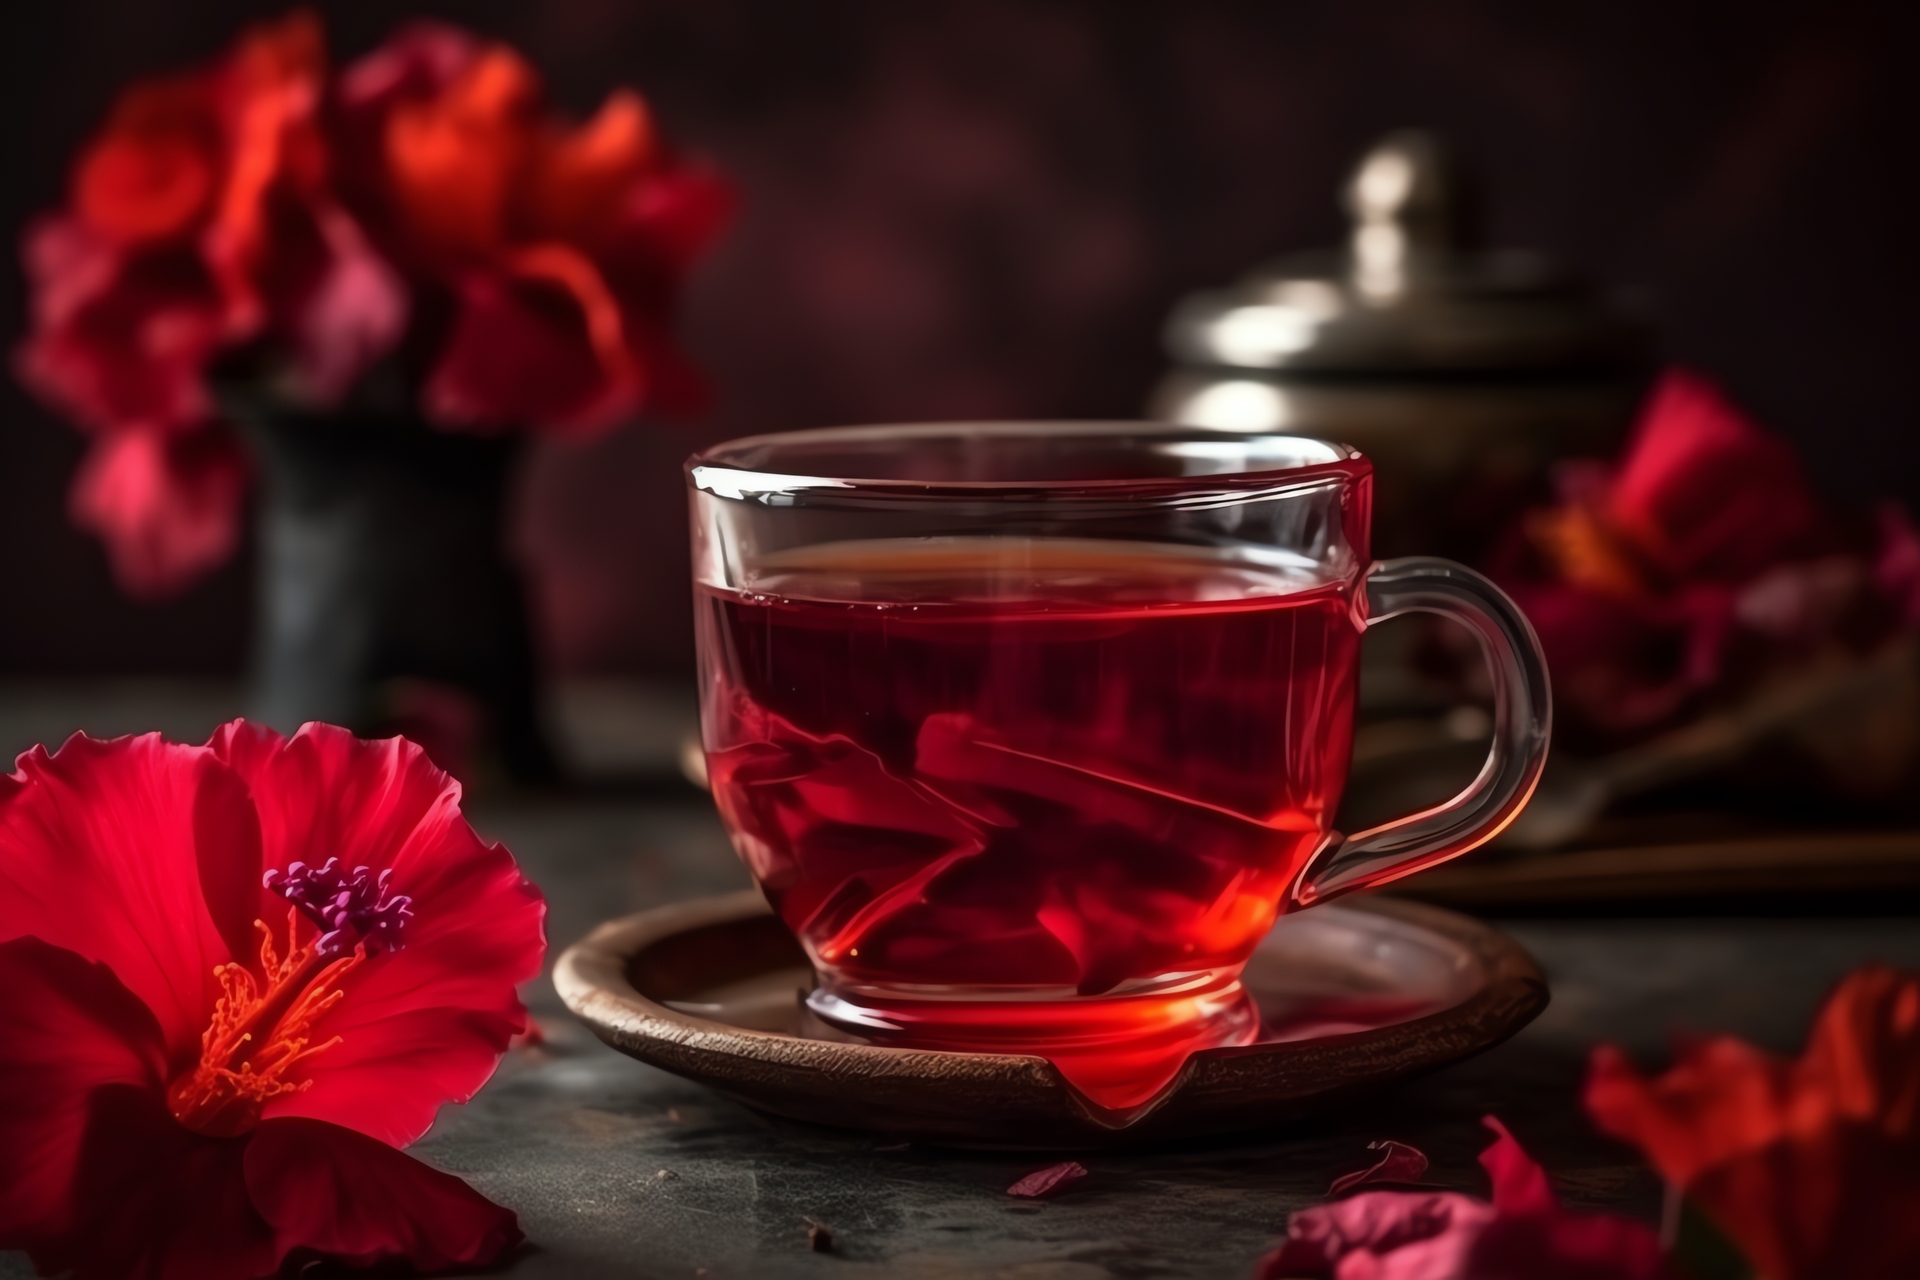 Na tym obrazku możemy zobaczyć piękną filiżankę z gorącą herbatą z dzikiej róży. Napój ma intensywny, rubinowy kolor i wspaniały aromat, który kusi zmysły. Delikatnie unosząca się para nad filiżanką tworzy atmosferę relaksu i zapowiada chwilę błogiego odprężenia przy smaku tej wyjątkowej herbaty